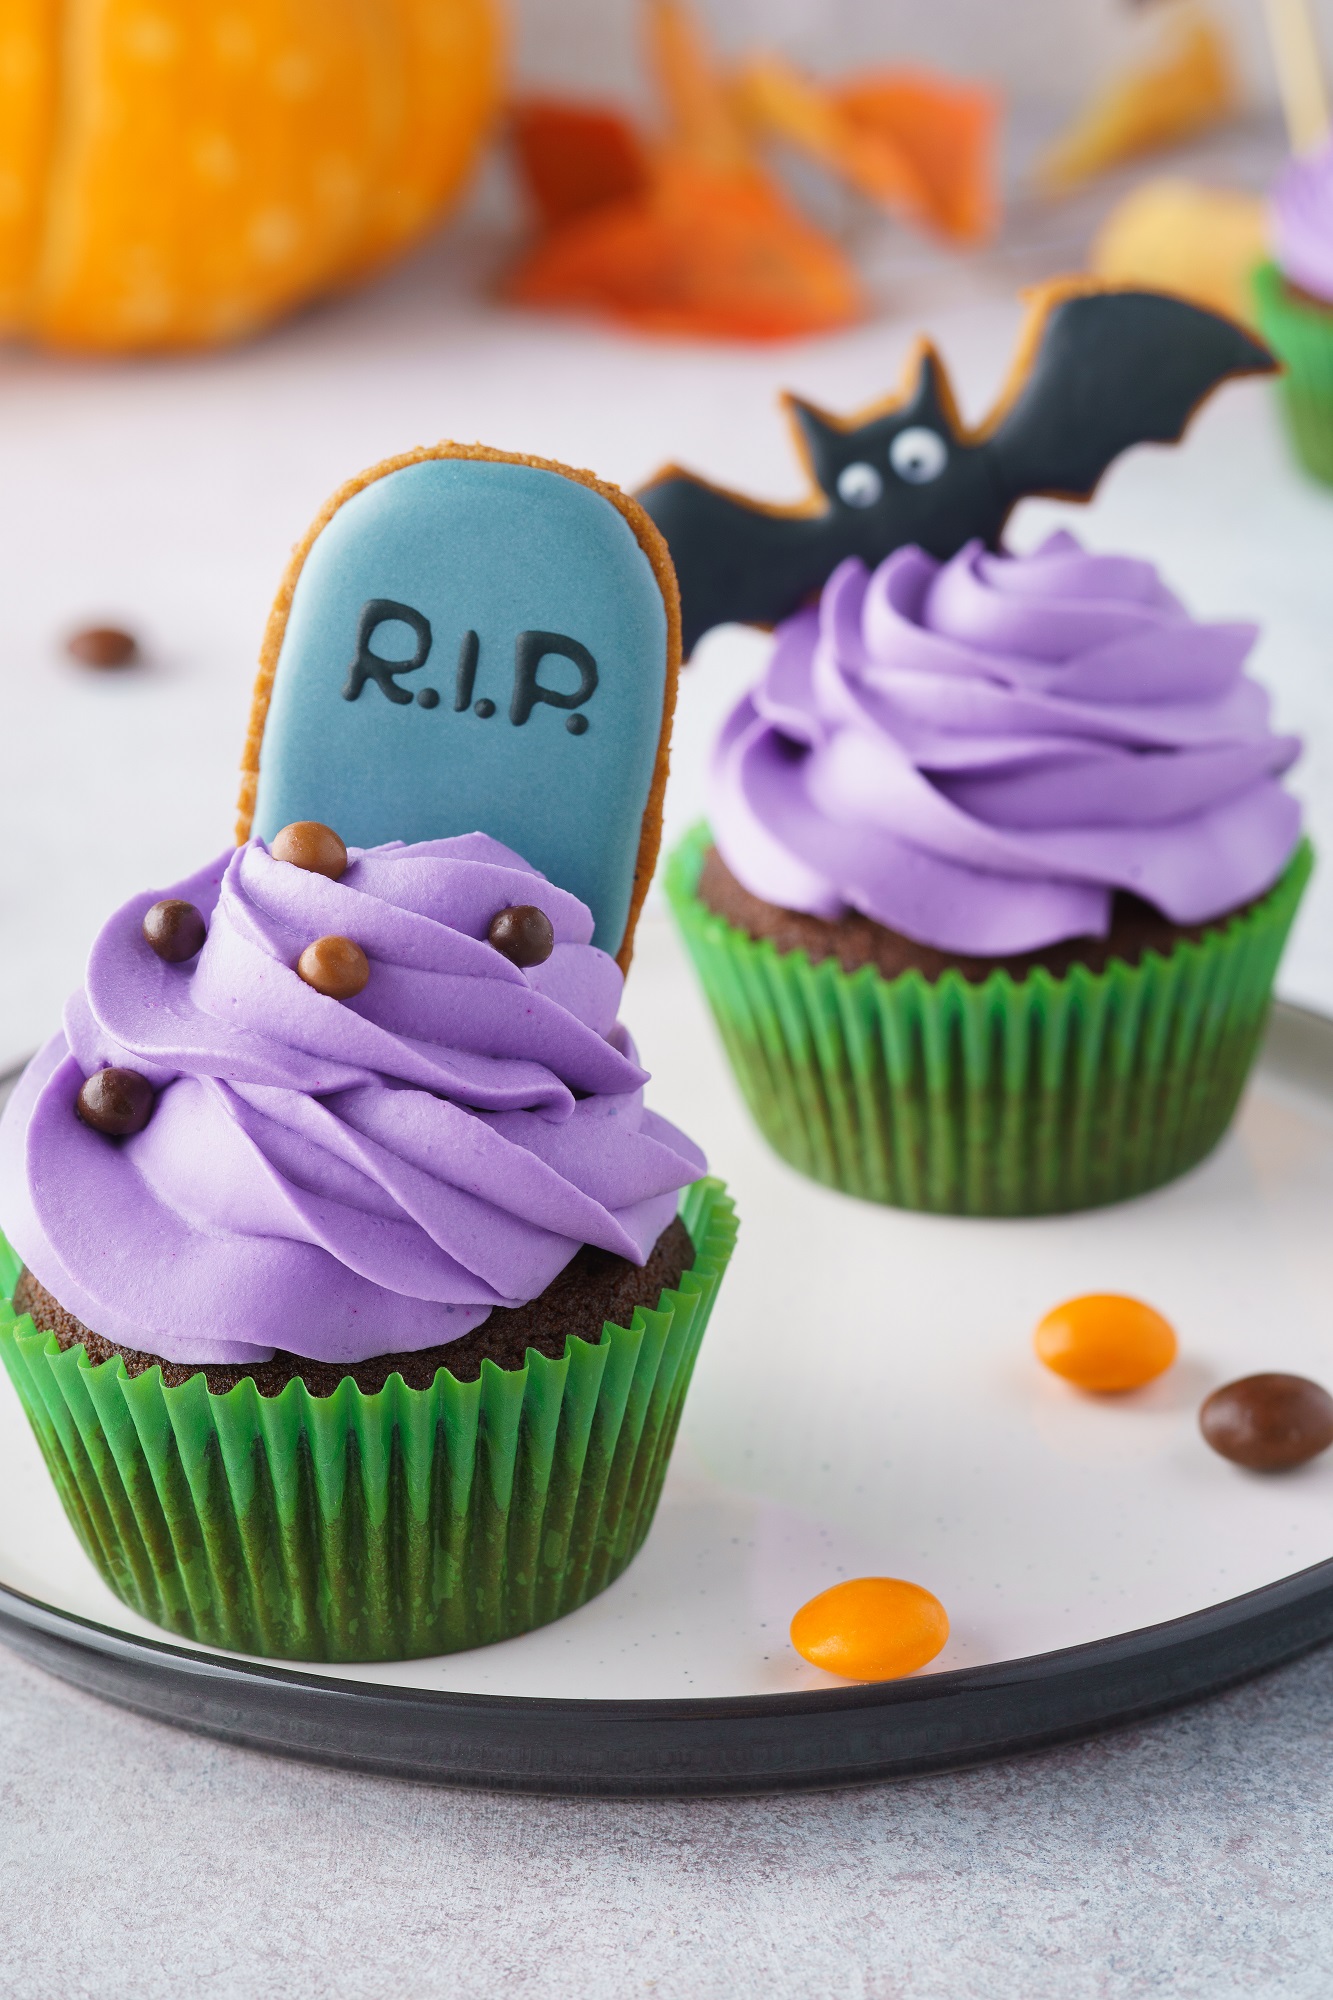 RIP & Bat Cookie Sign Halloween Cupcakes